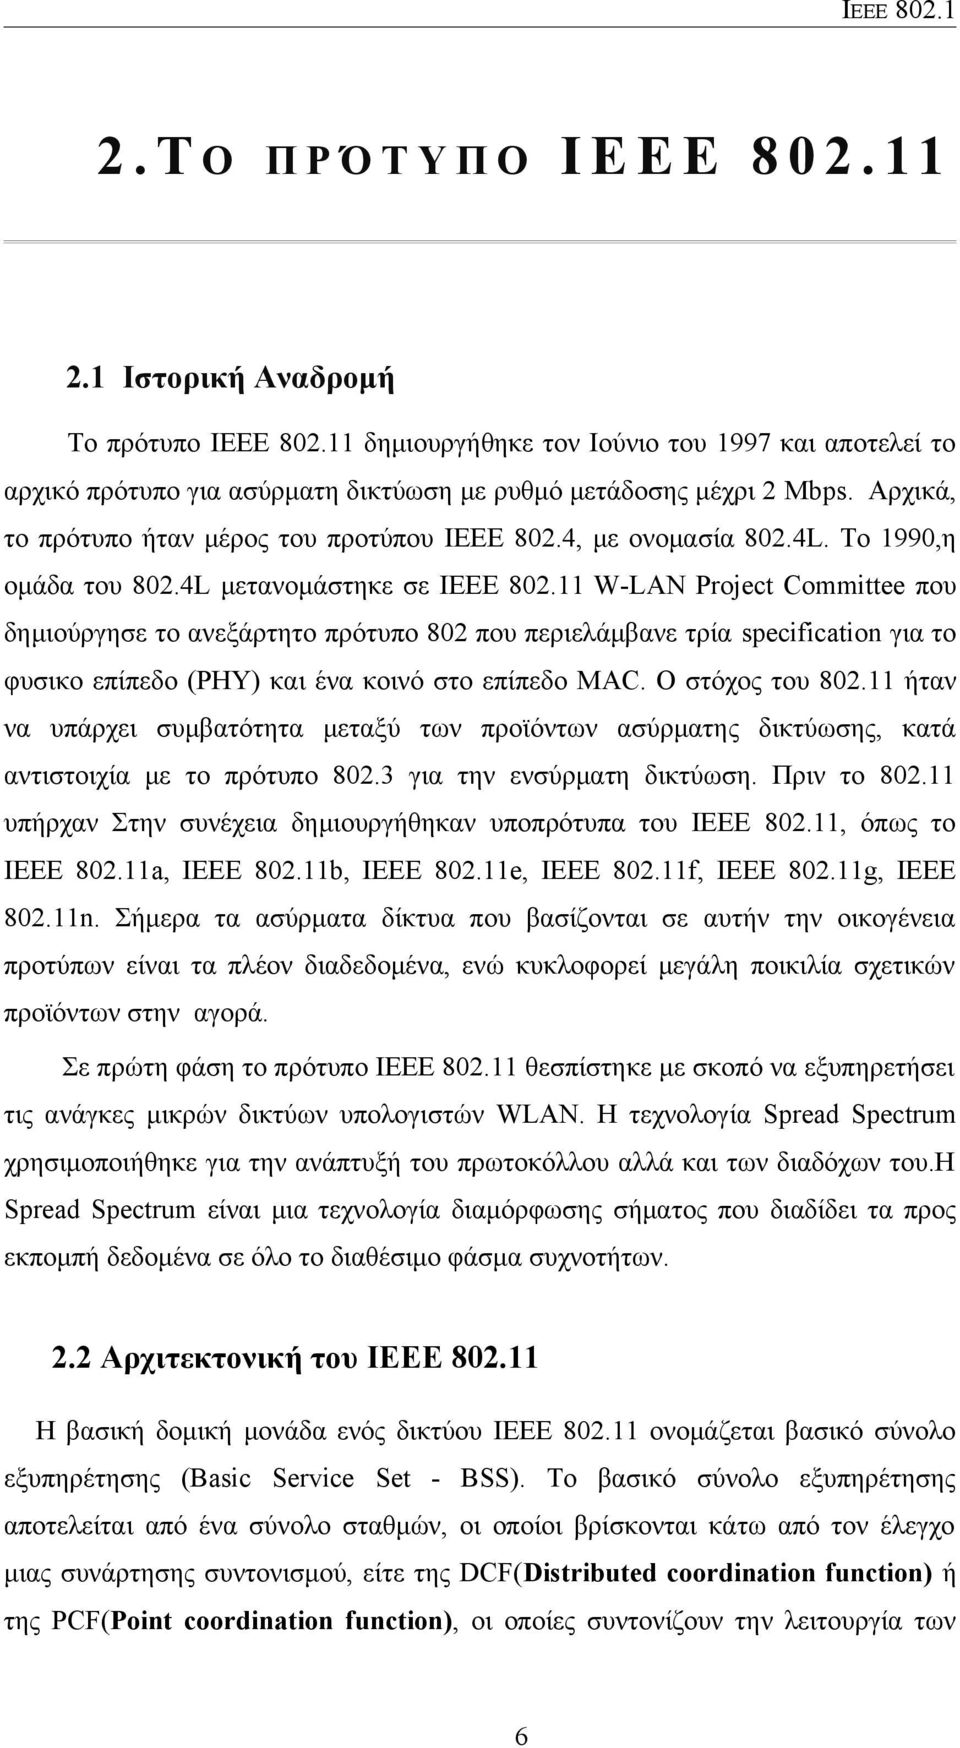 Το 1990,η ομάδα του 802.4L μετανομάστηκε σε IEEE 802.